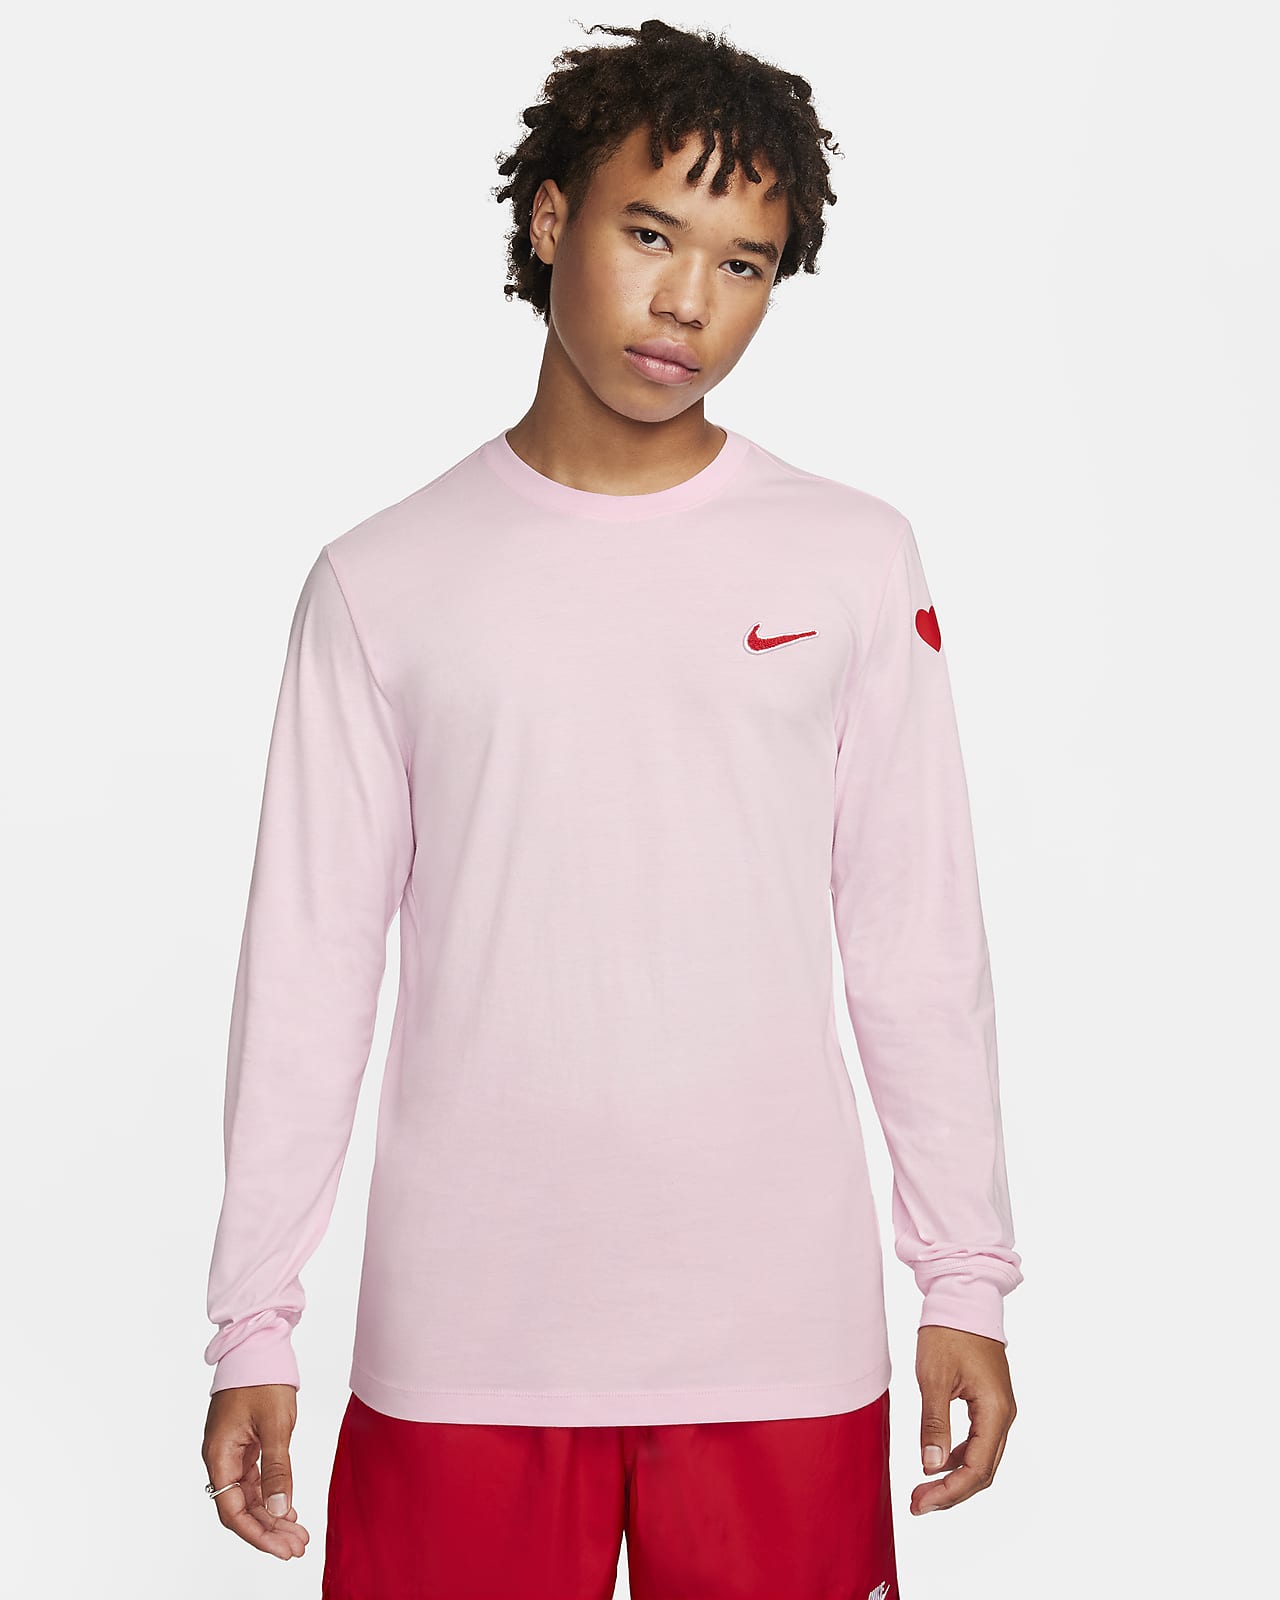 IL Nike T-Shirt. Nike Long-Sleeve Sportswear